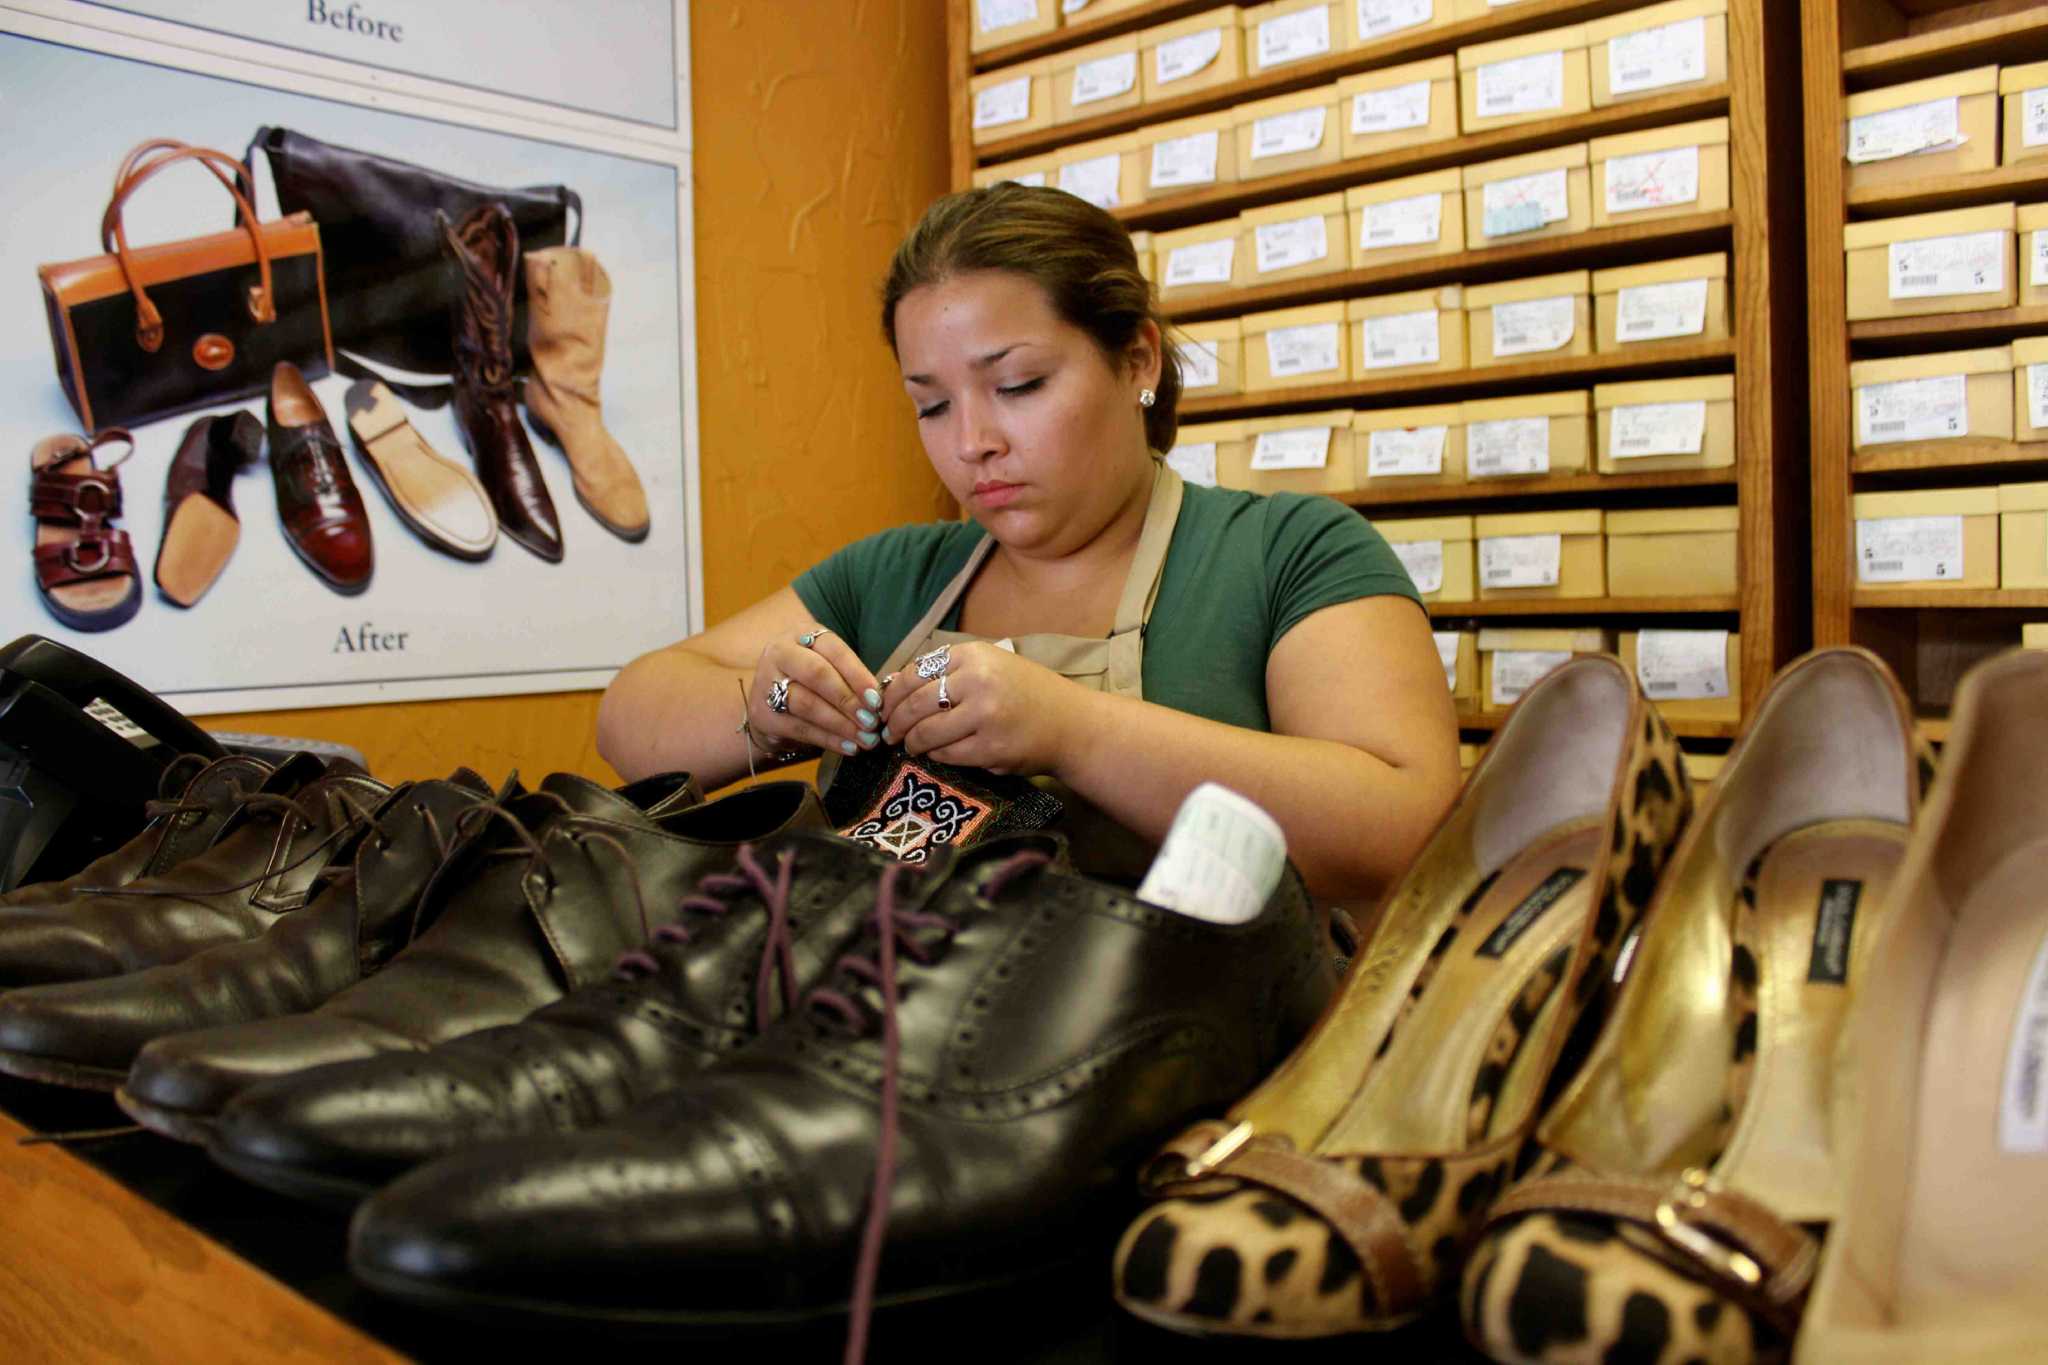 Shoe repair store provides clients a 